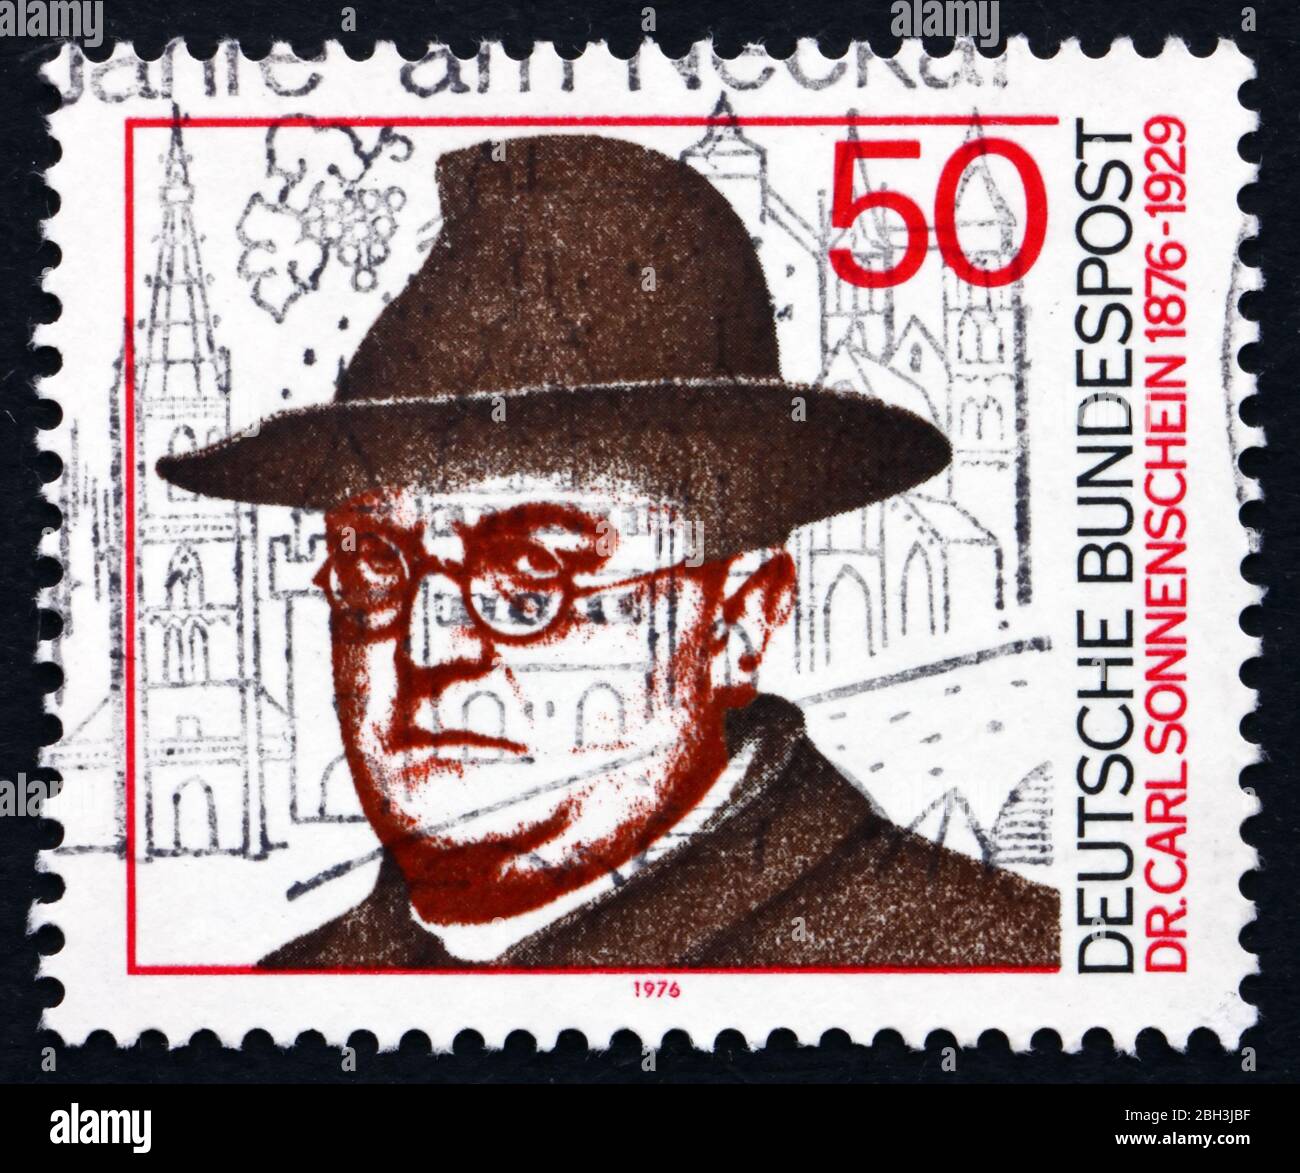 DEUTSCHLAND - UM 1976: Eine in Deutschland gedruckte Briefmarke zeigt Dr. Carl Sonnenschein, römisch-katholischer Geistlicher und Sozialreformer, um 1976 Stockfoto